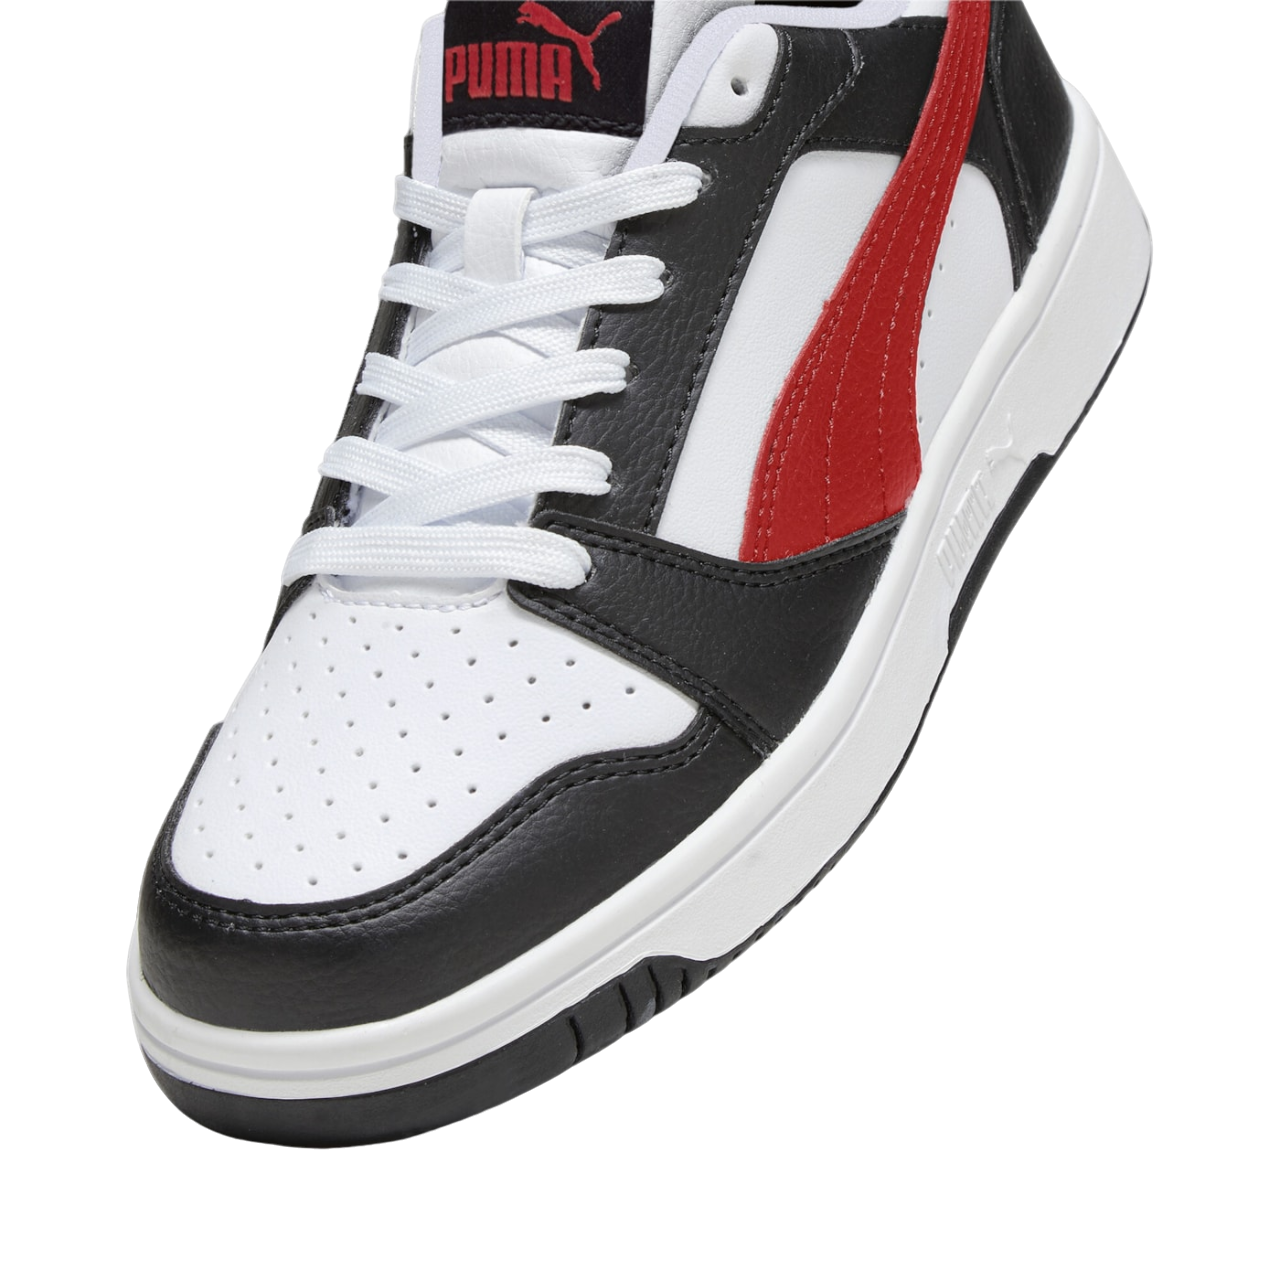 Puma scarpa sneakers da ragazzi Rebound v6 393833-04 bianco-nero-rosso